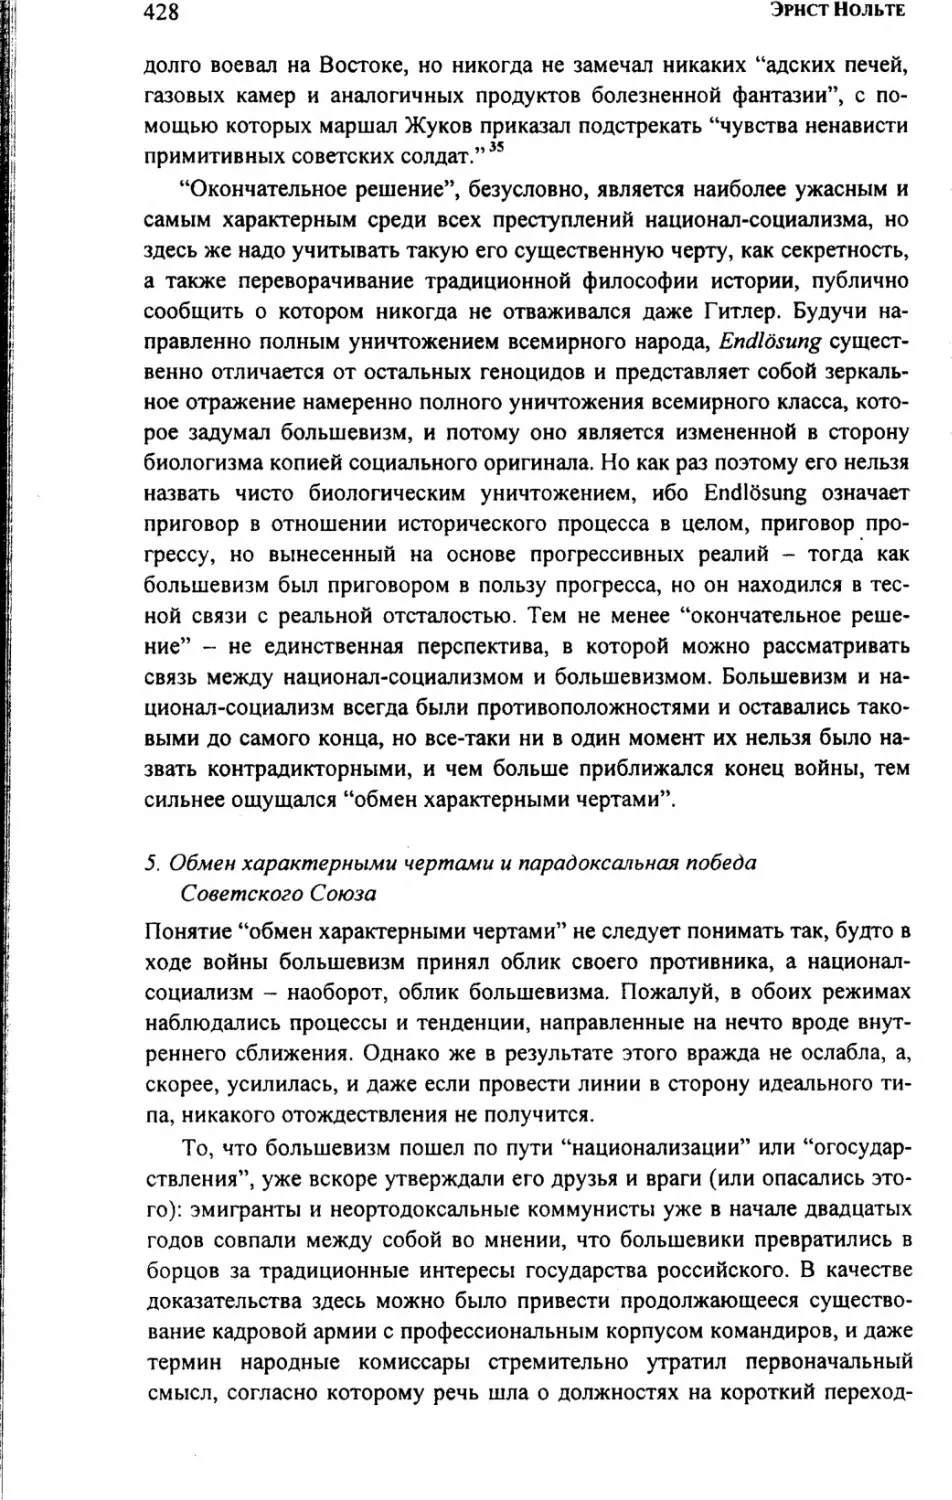 5.  Обмен характерными  чертами  и парадоксальная  победа Советского Союза